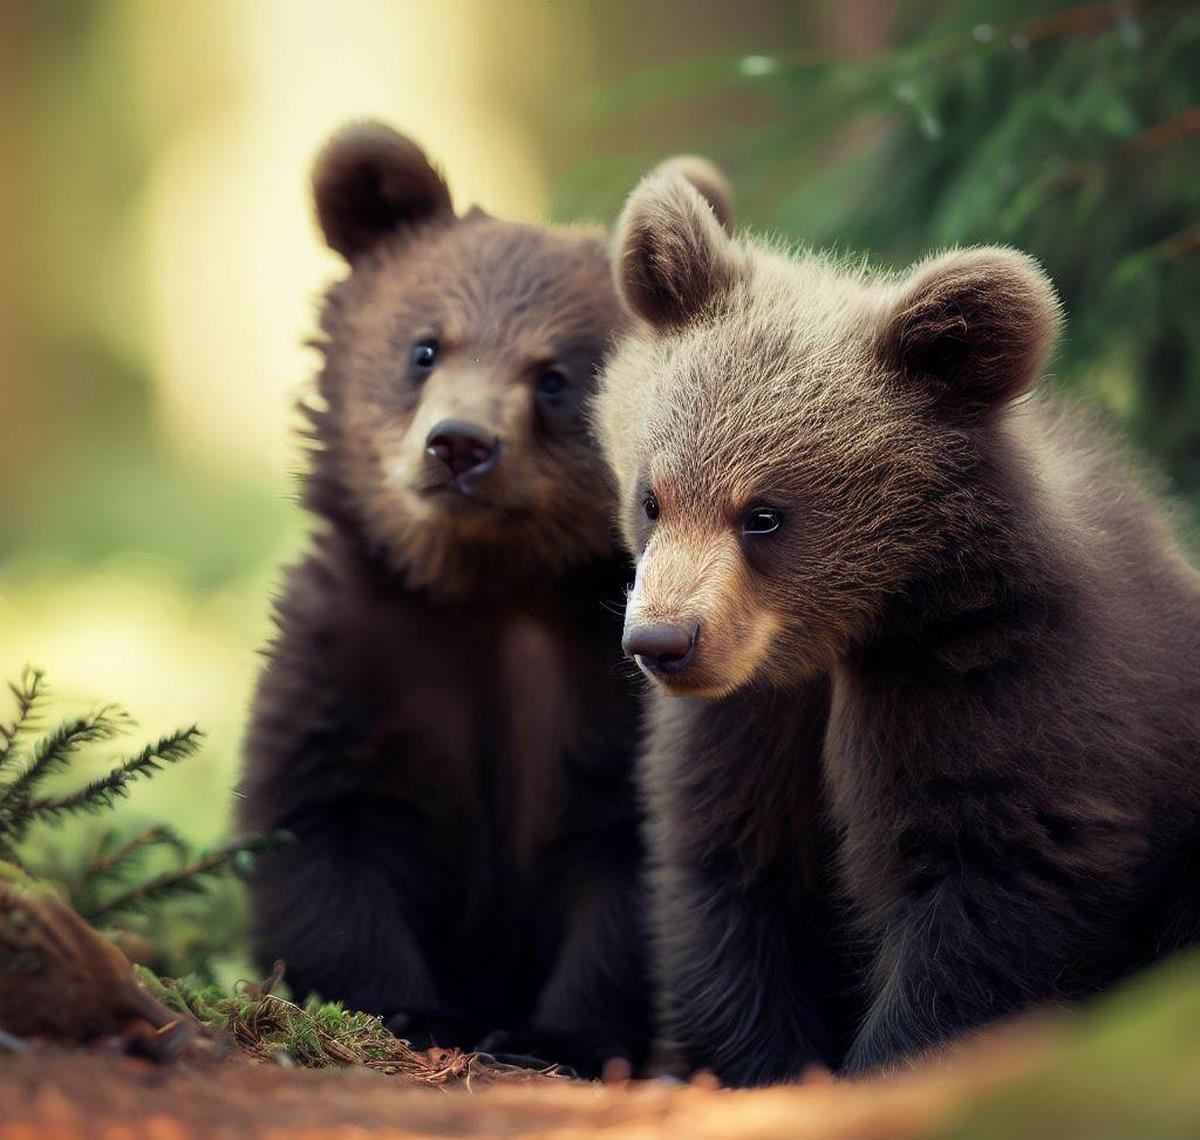 12 proposte per la gestione di orsi e animali selvatici: le raccomandazioni dell'Oipa al Ministero dell'Ambiente